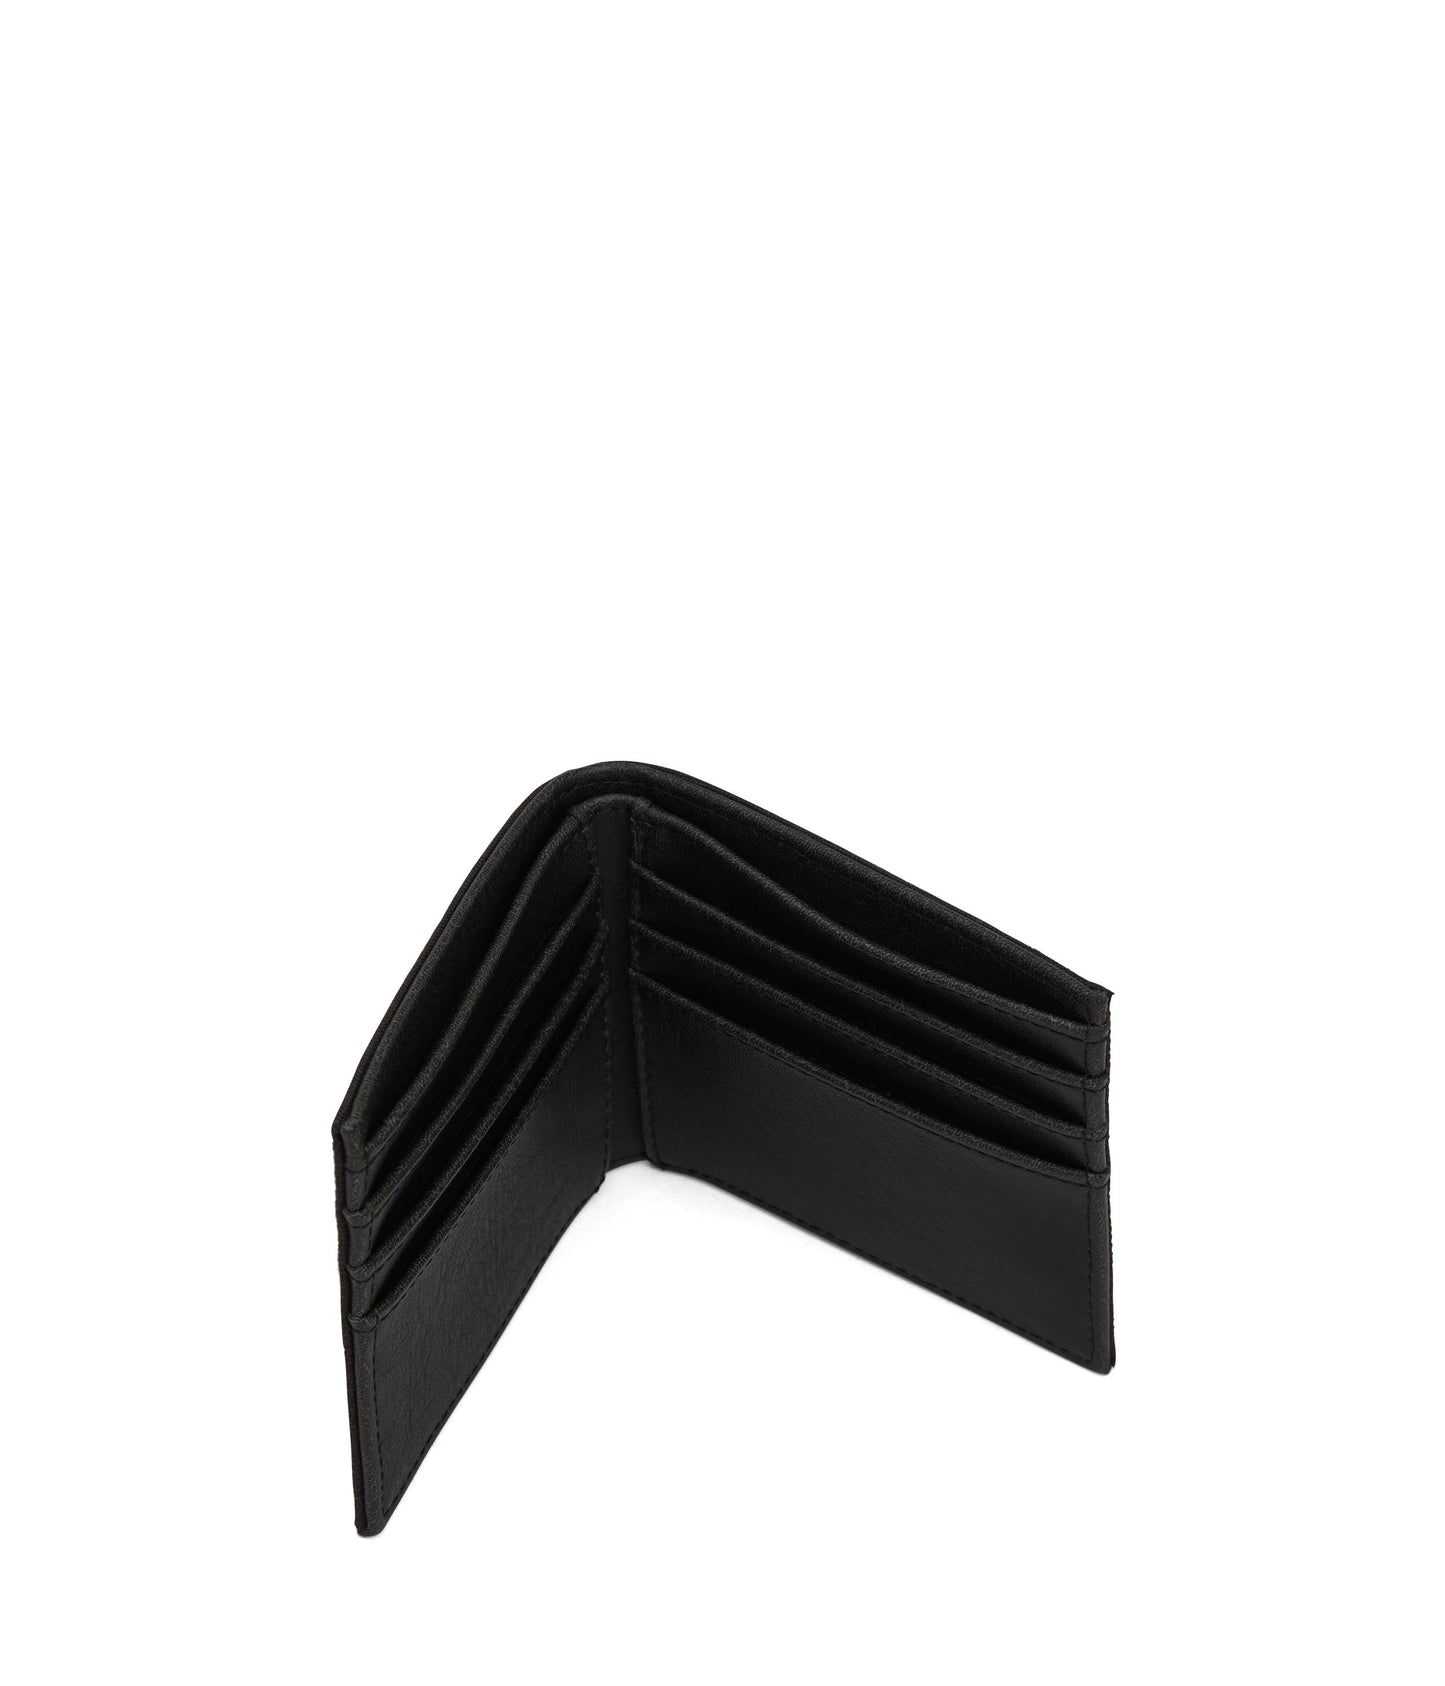 RUBBEN Vegan Folded Wallet - Canvas | Color: Black - variant::black